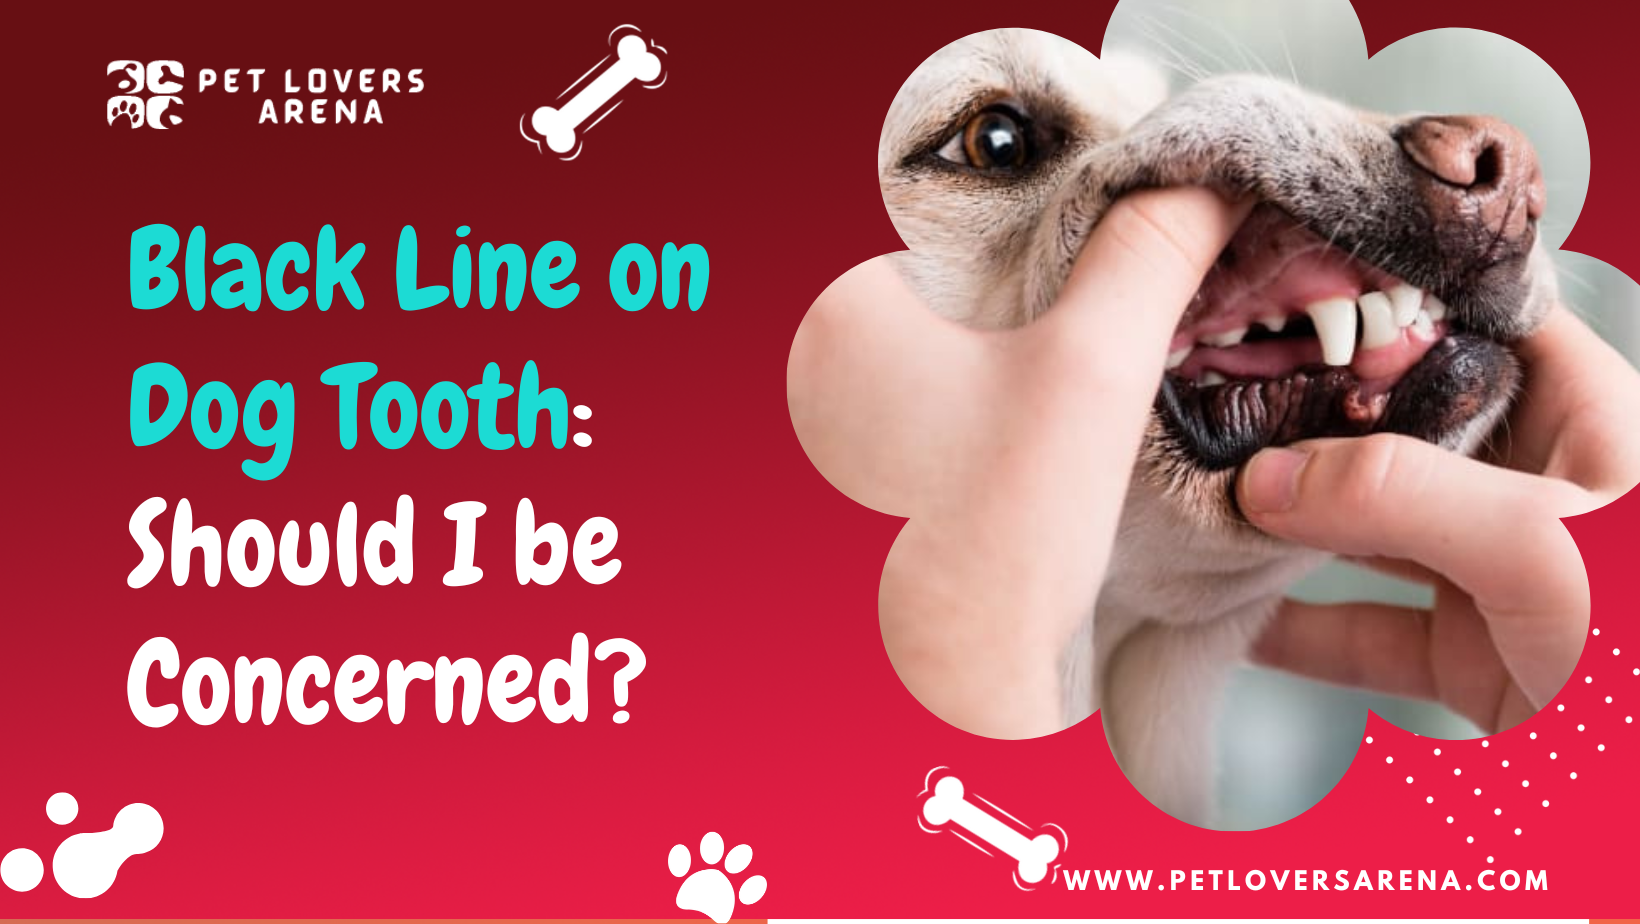 Black Line on Dog Tooth: Should I be Concerned?